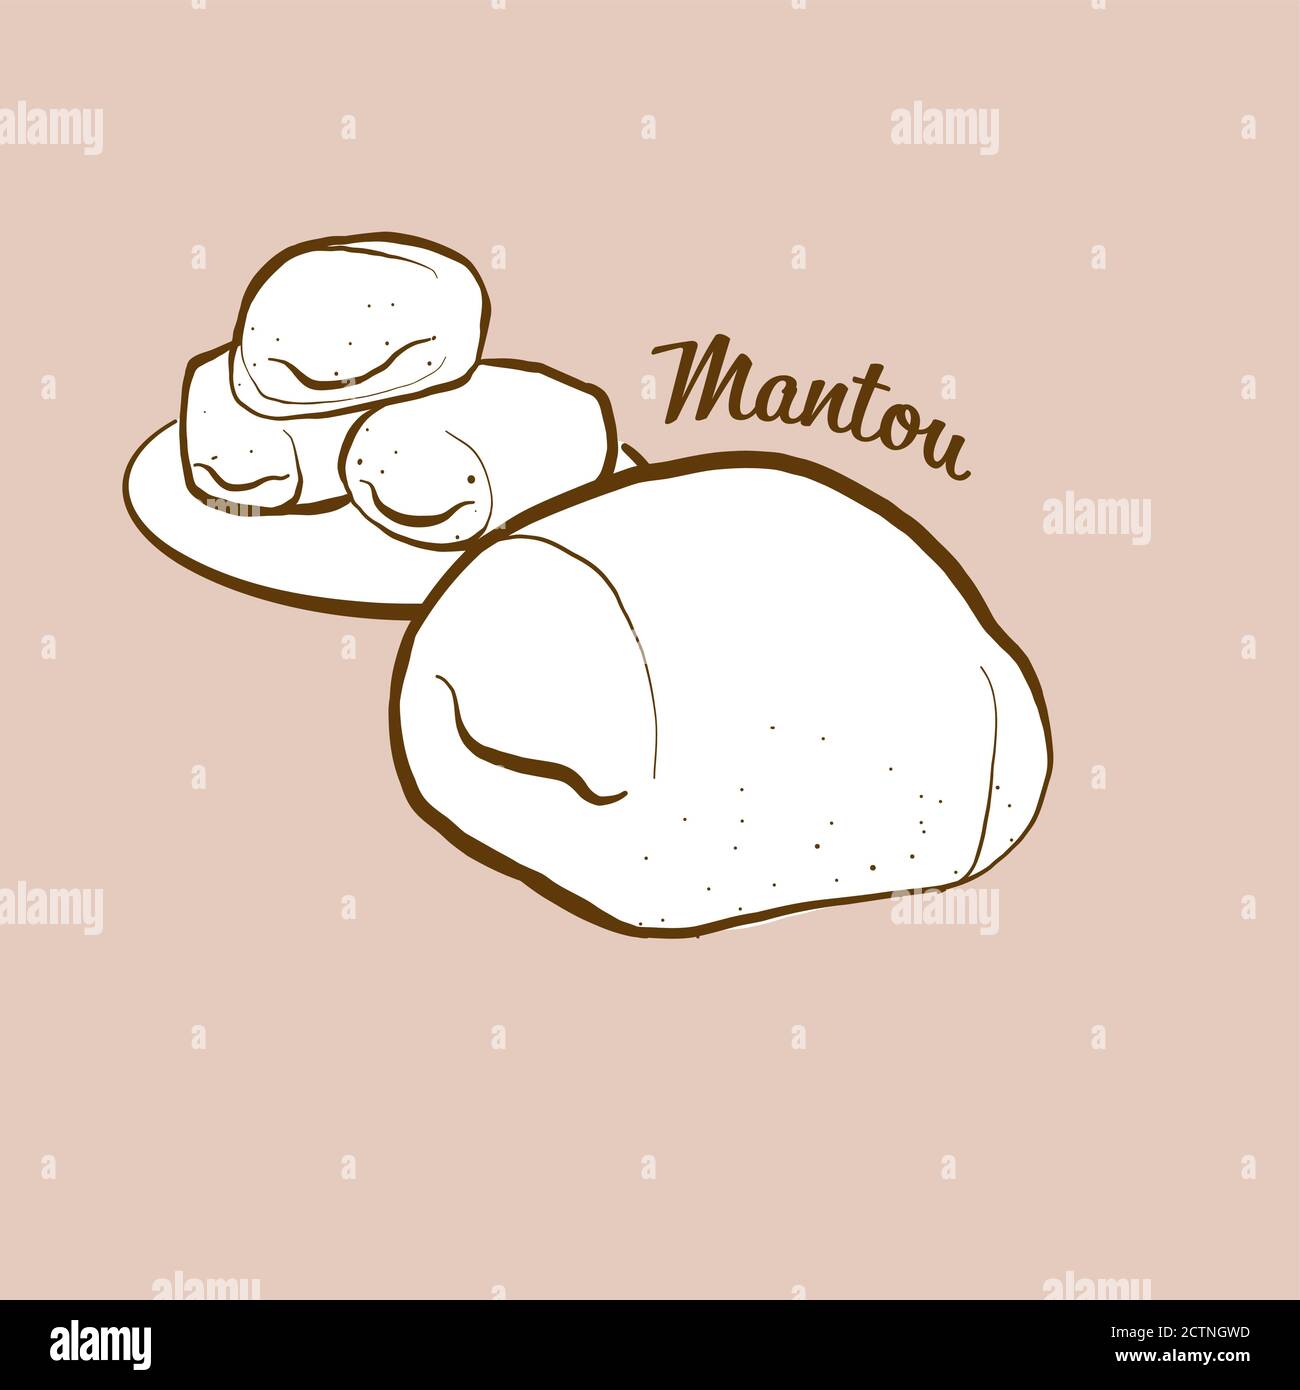 Illustrazione del pane di Mantou disegnato a mano. Il bun, solitamente conosciuto in Cina. Serie di disegni vettoriali. Illustrazione Vettoriale